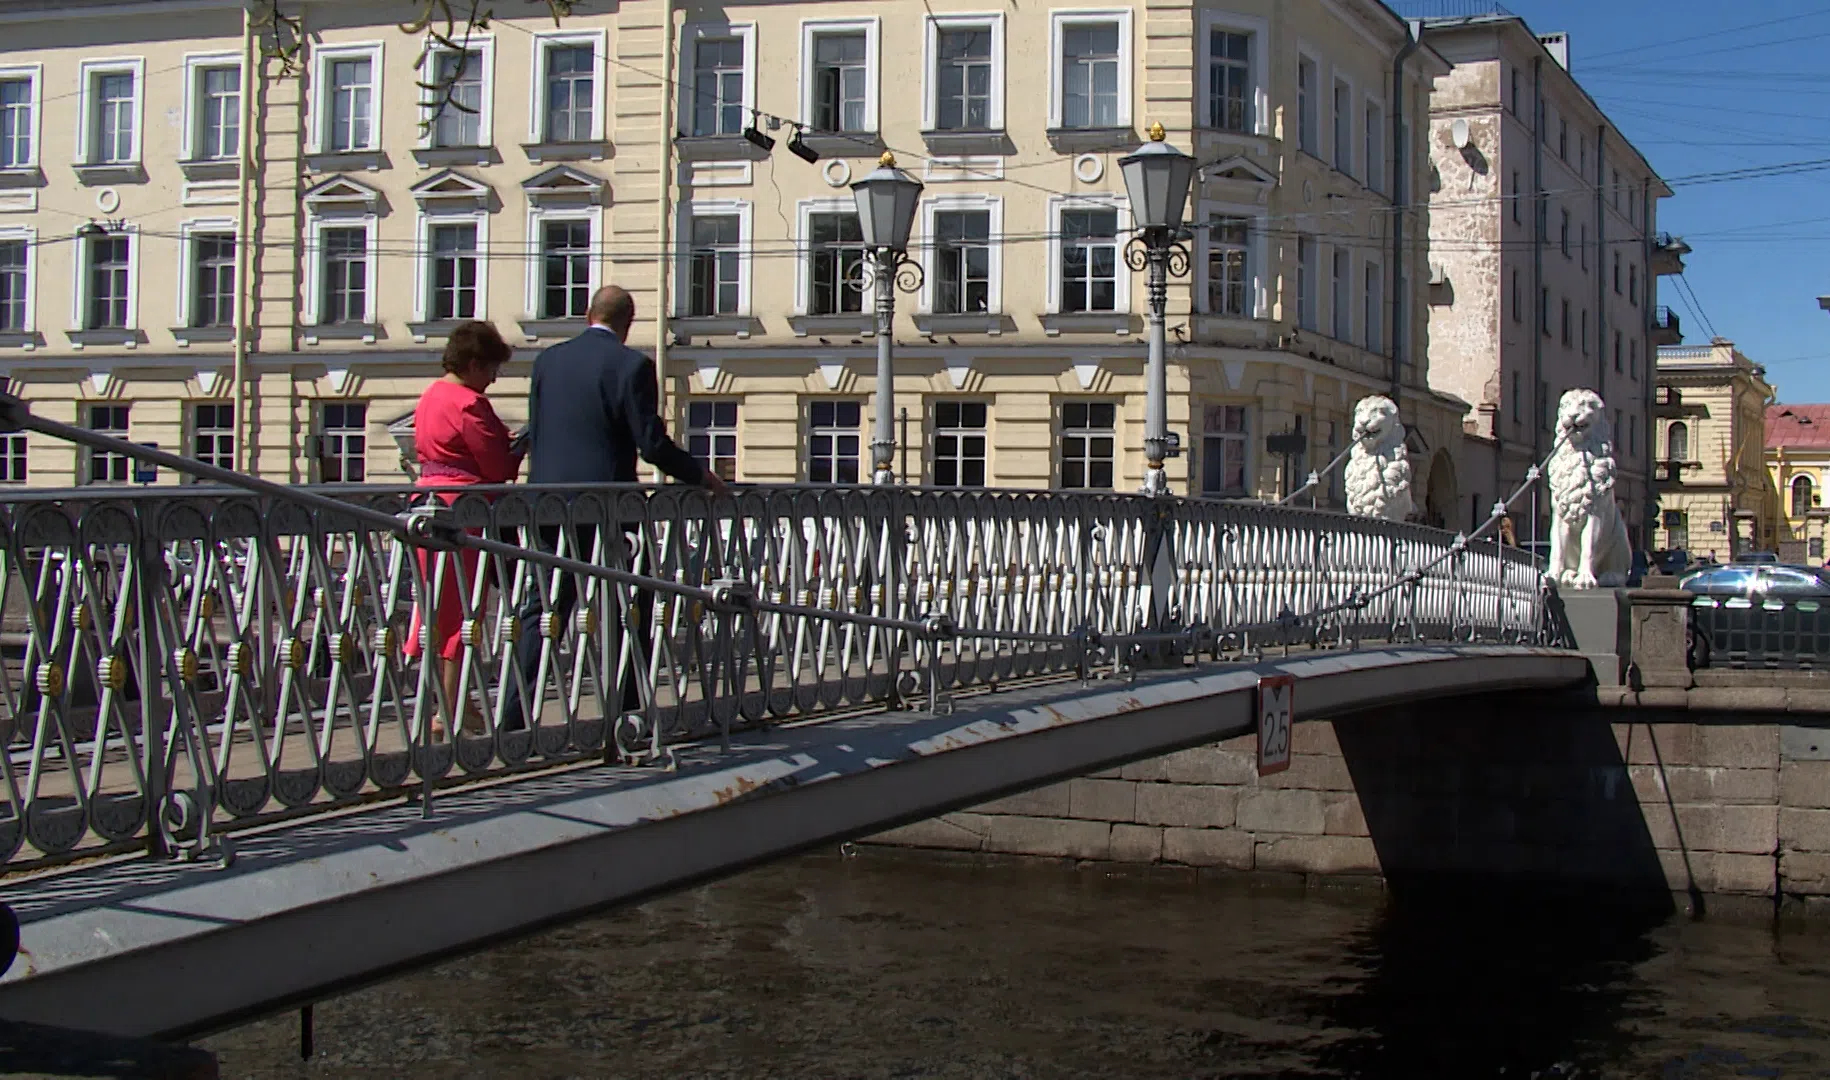 Видео канал грибоедов. Набережная канала Грибоедова 98 львиный мост. Канал Грибоедова мосты через канал Грибоедова. Итальянский мост на канале Грибоедова. Львиный мост (Санкт-Петербург) мосты через канал Грибоедова.